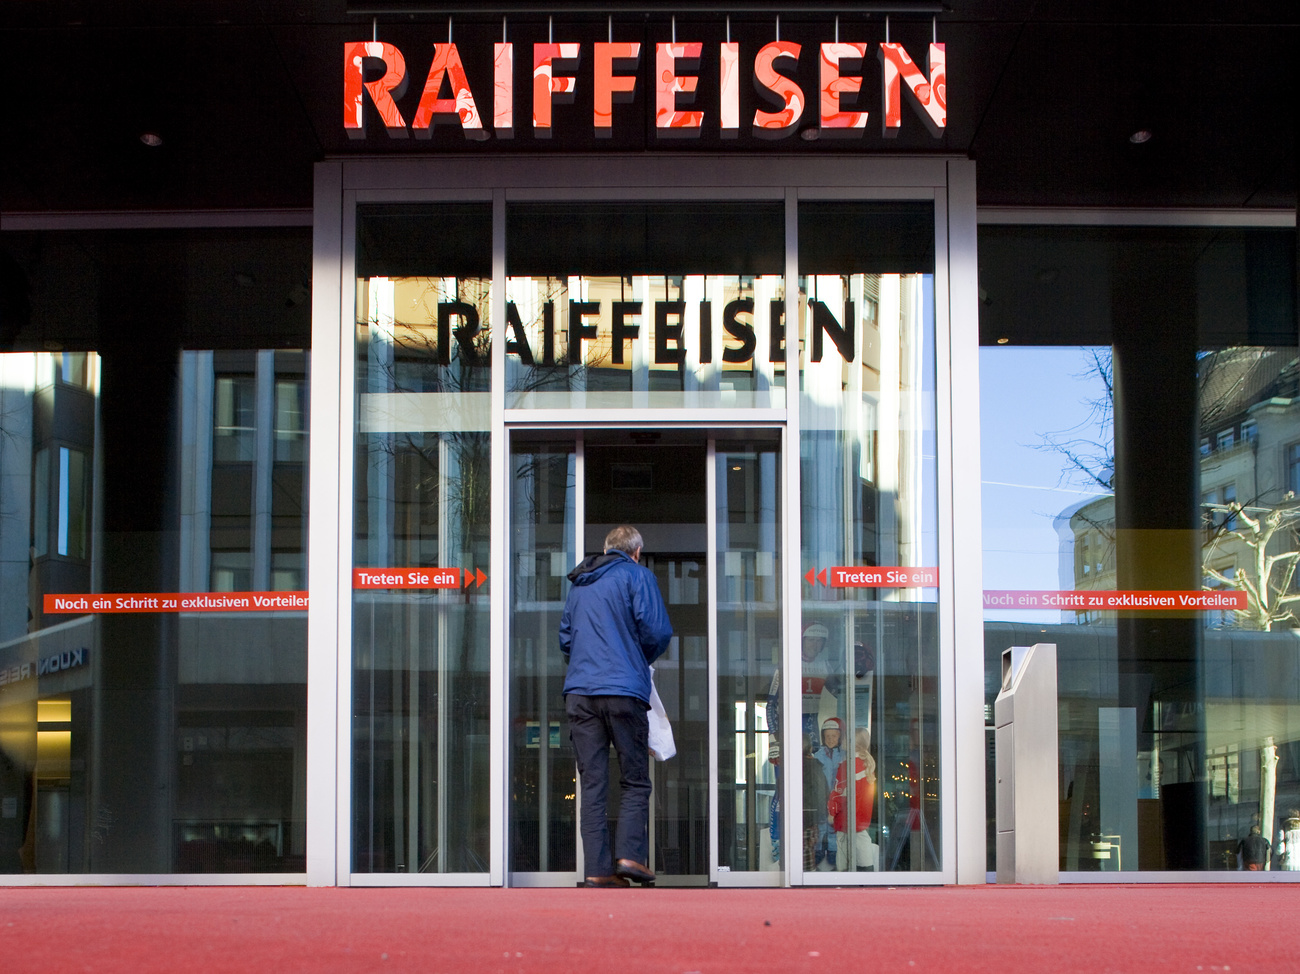 Raiffeissen bank branch in Switzerland